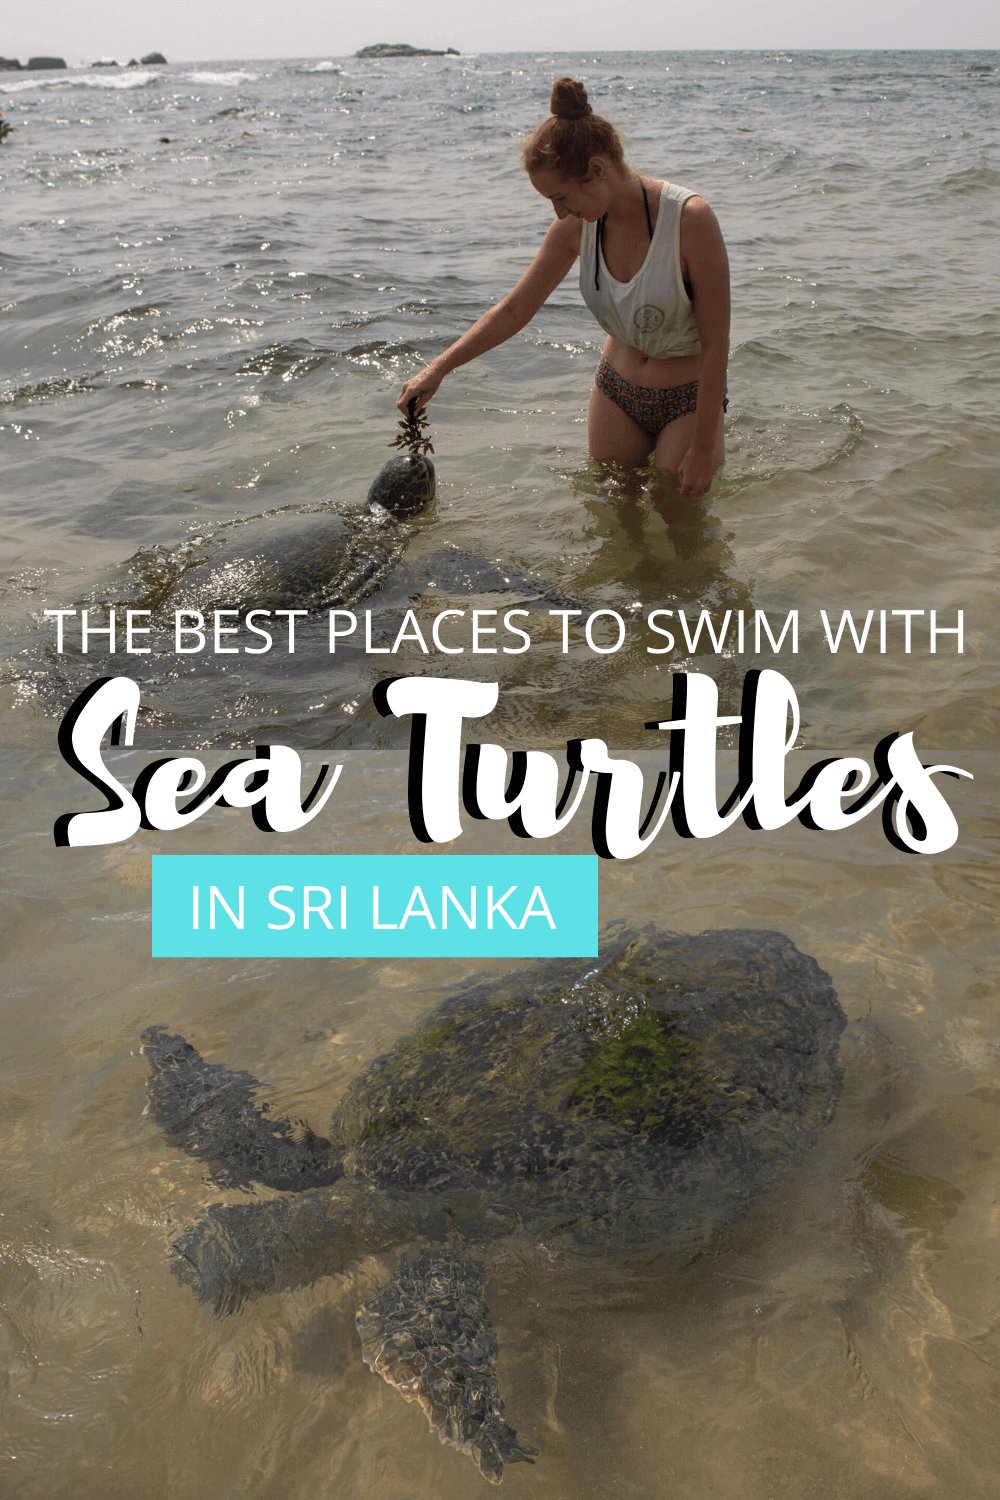 turtles in Sri Lanka